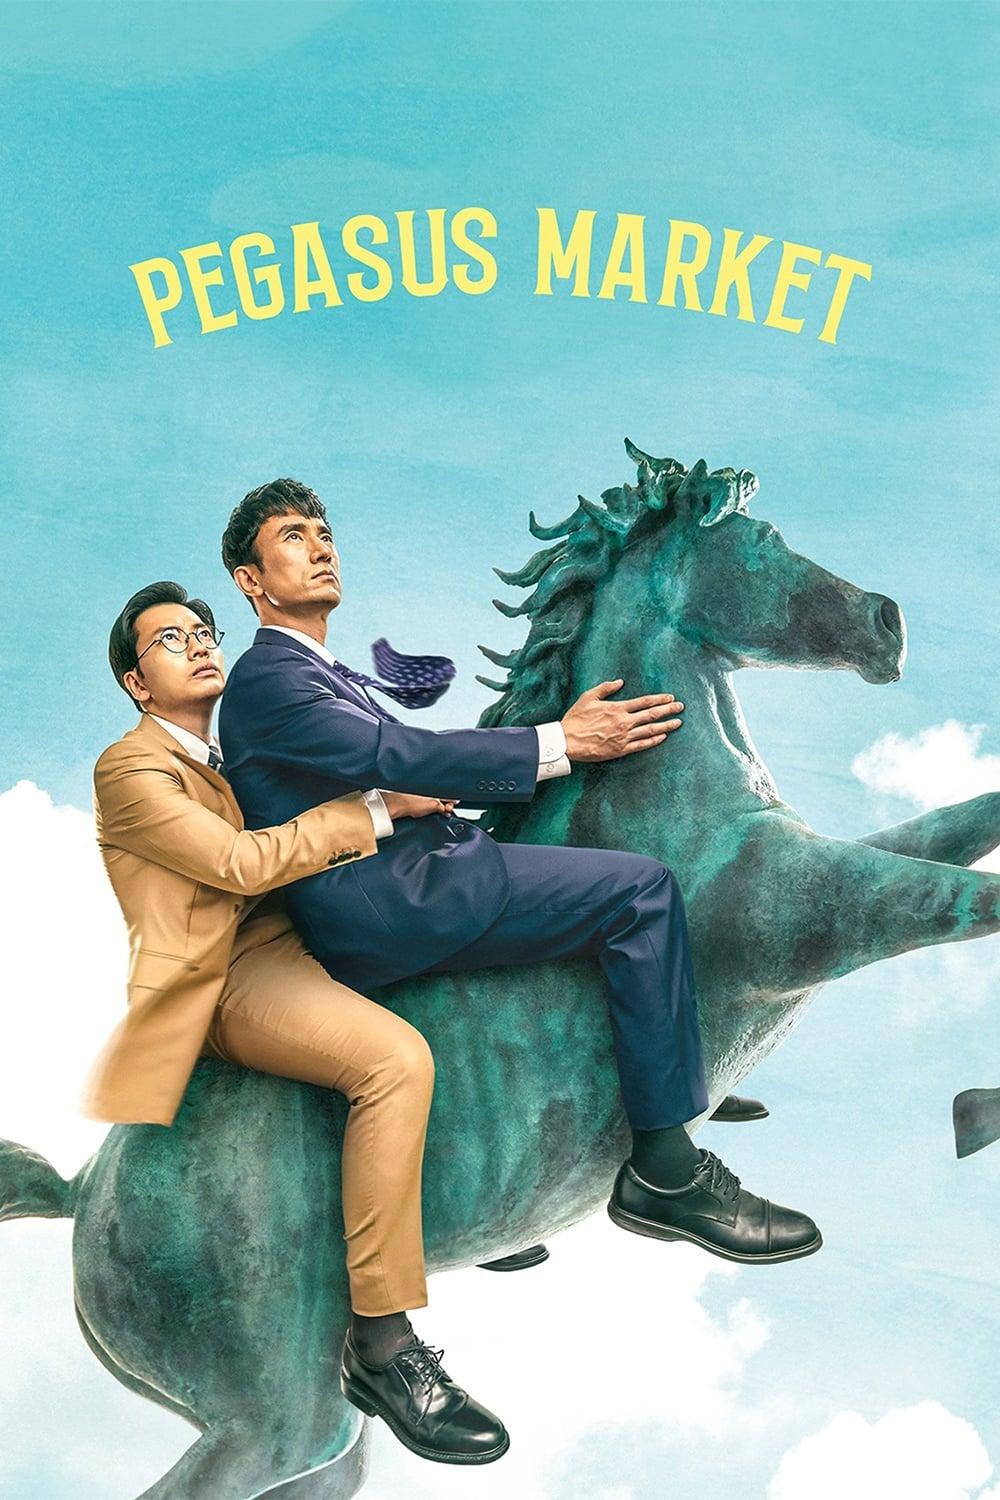 Pegasus Market poster